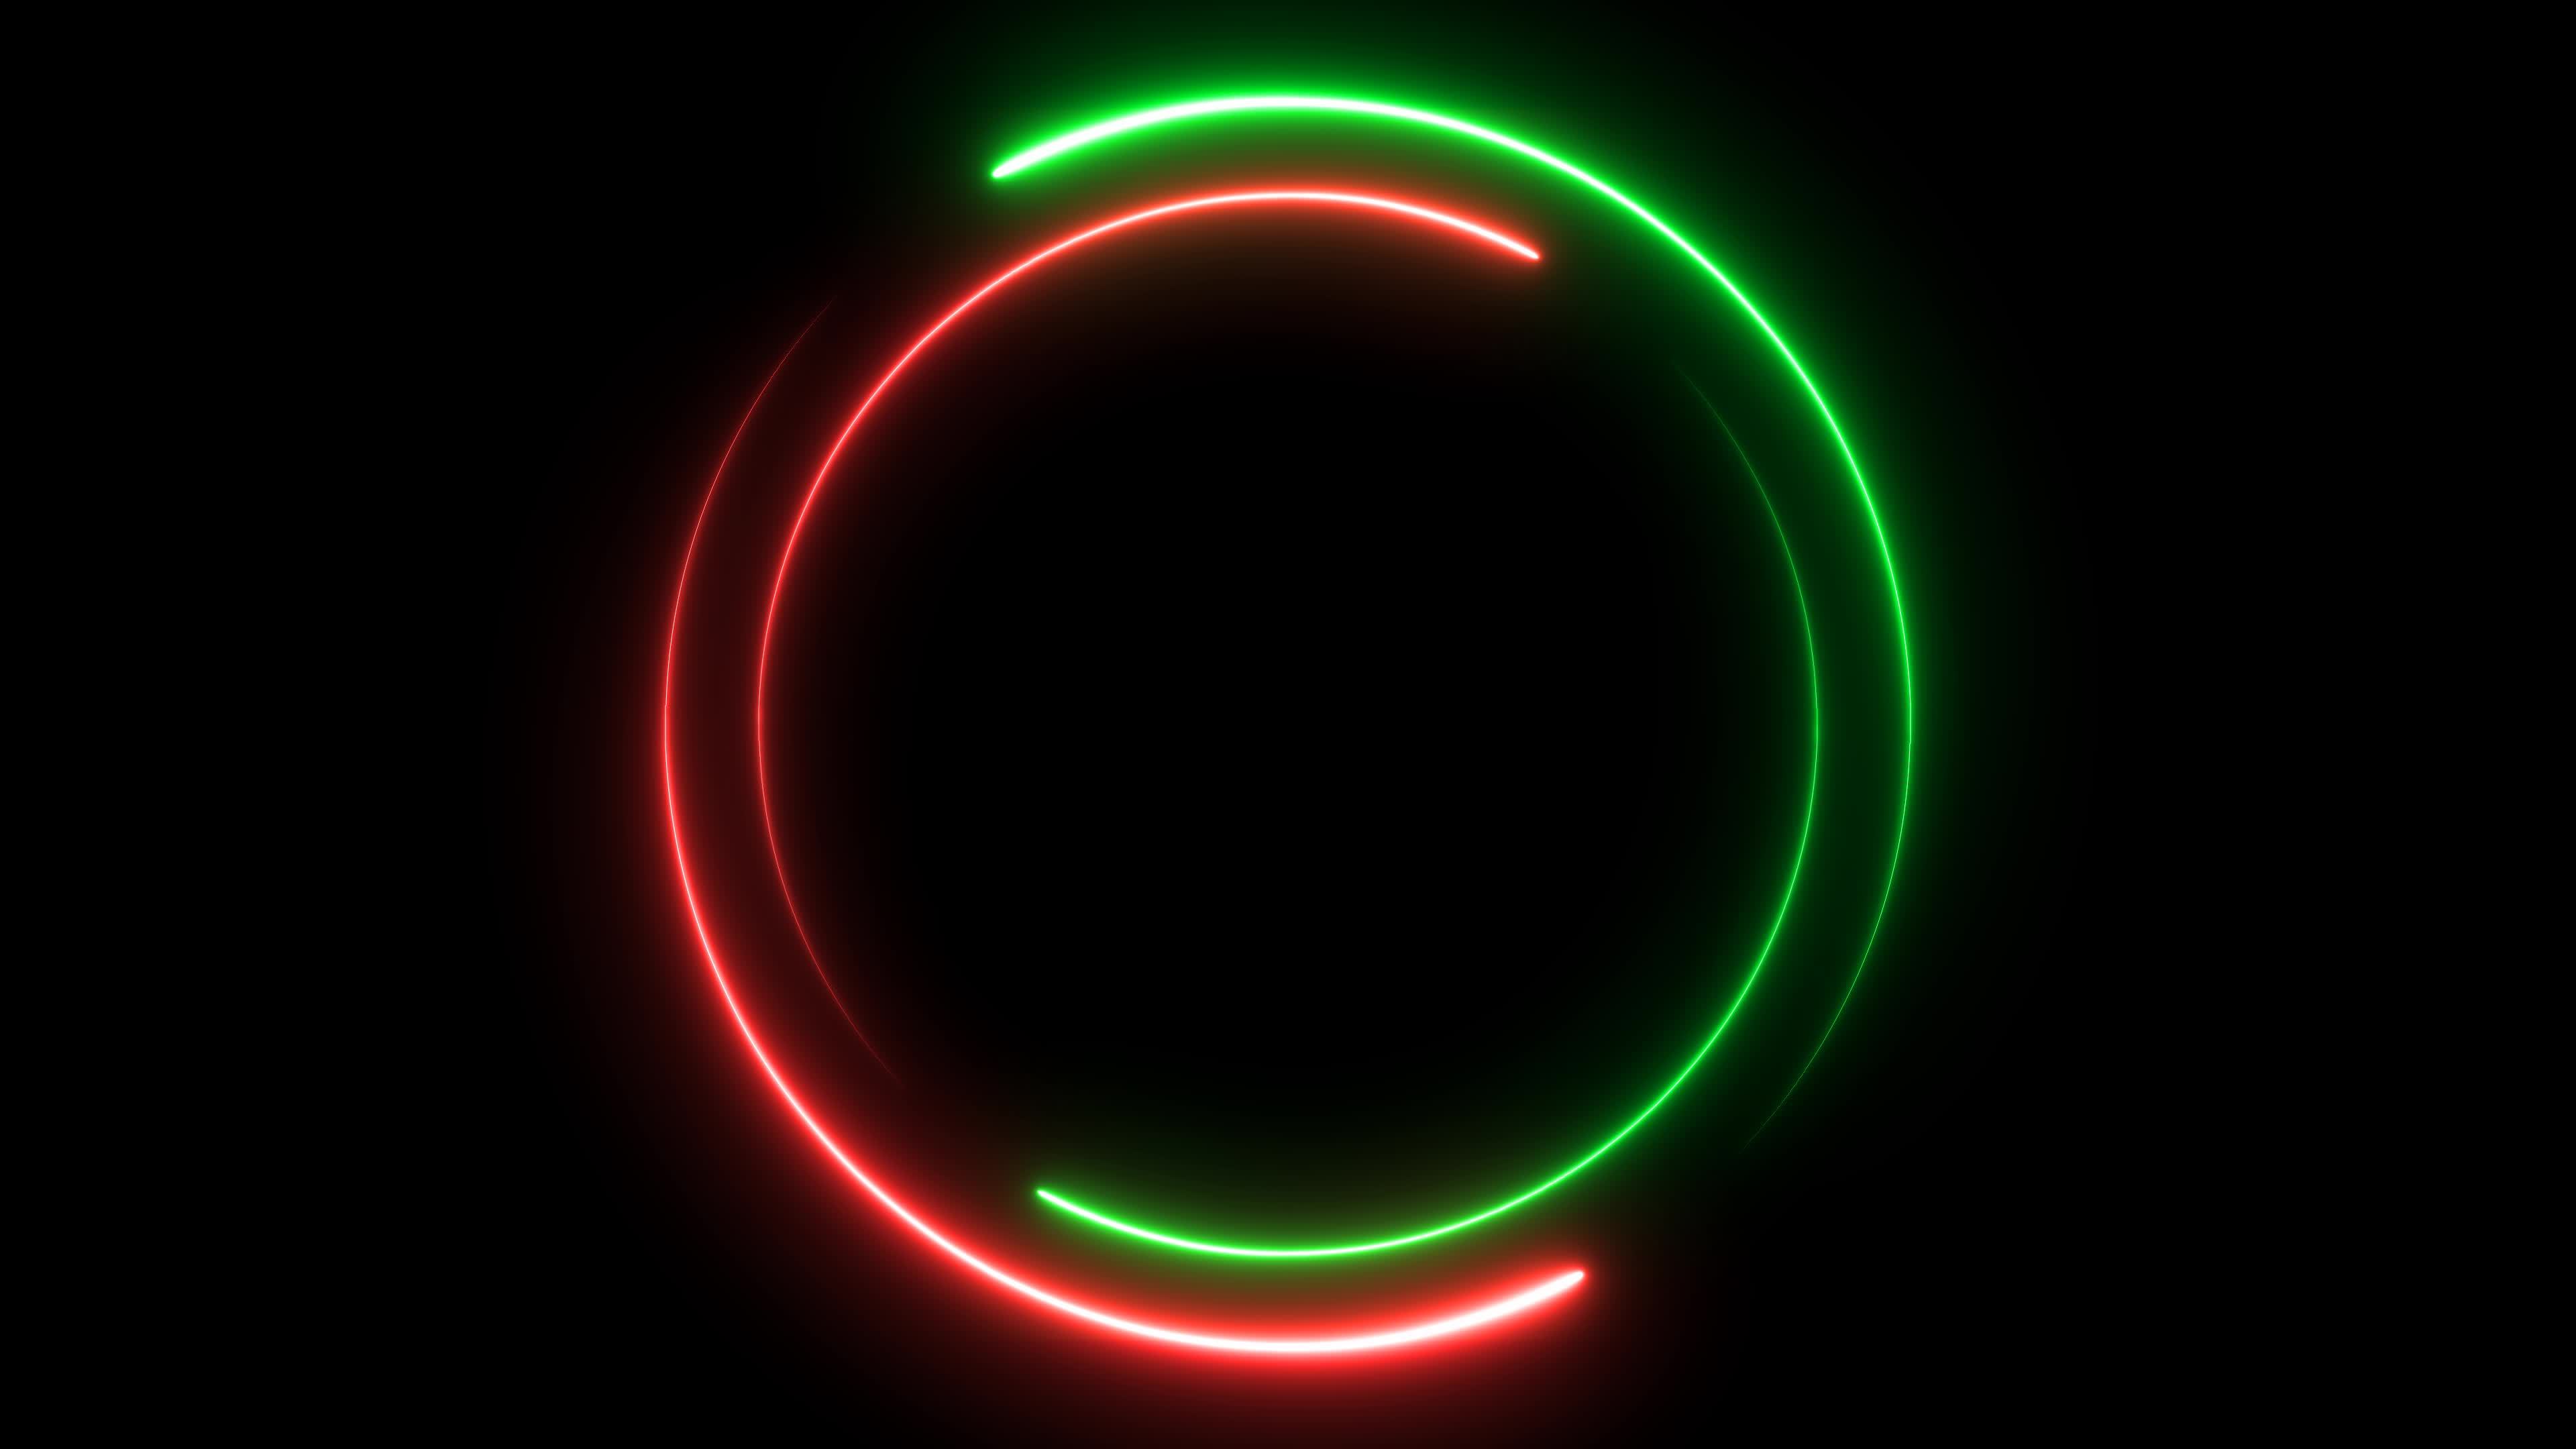 Neon glowing circle frame background - một bức tranh nổi bật với chủ đề neon huyền bí. Nó sử dụng màu sắc rực rỡ để tạo ra một vùng trời riêng biệt và độc đáo. Sự kết hợp độc đáo giữa thiết kế cổ điển và hiện đại đã tạo nên một tác phẩm nghệ thuật đầy mê hoặc. Nhấn vào hình ảnh để khám phá thêm chi tiết!